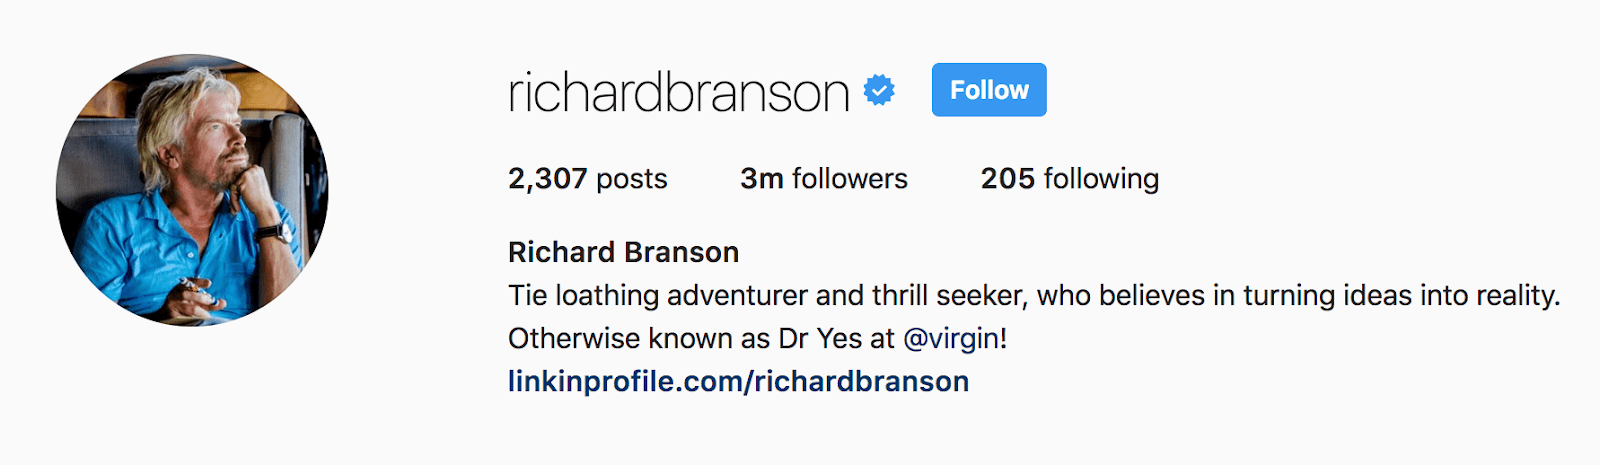 richard branson instagram bio